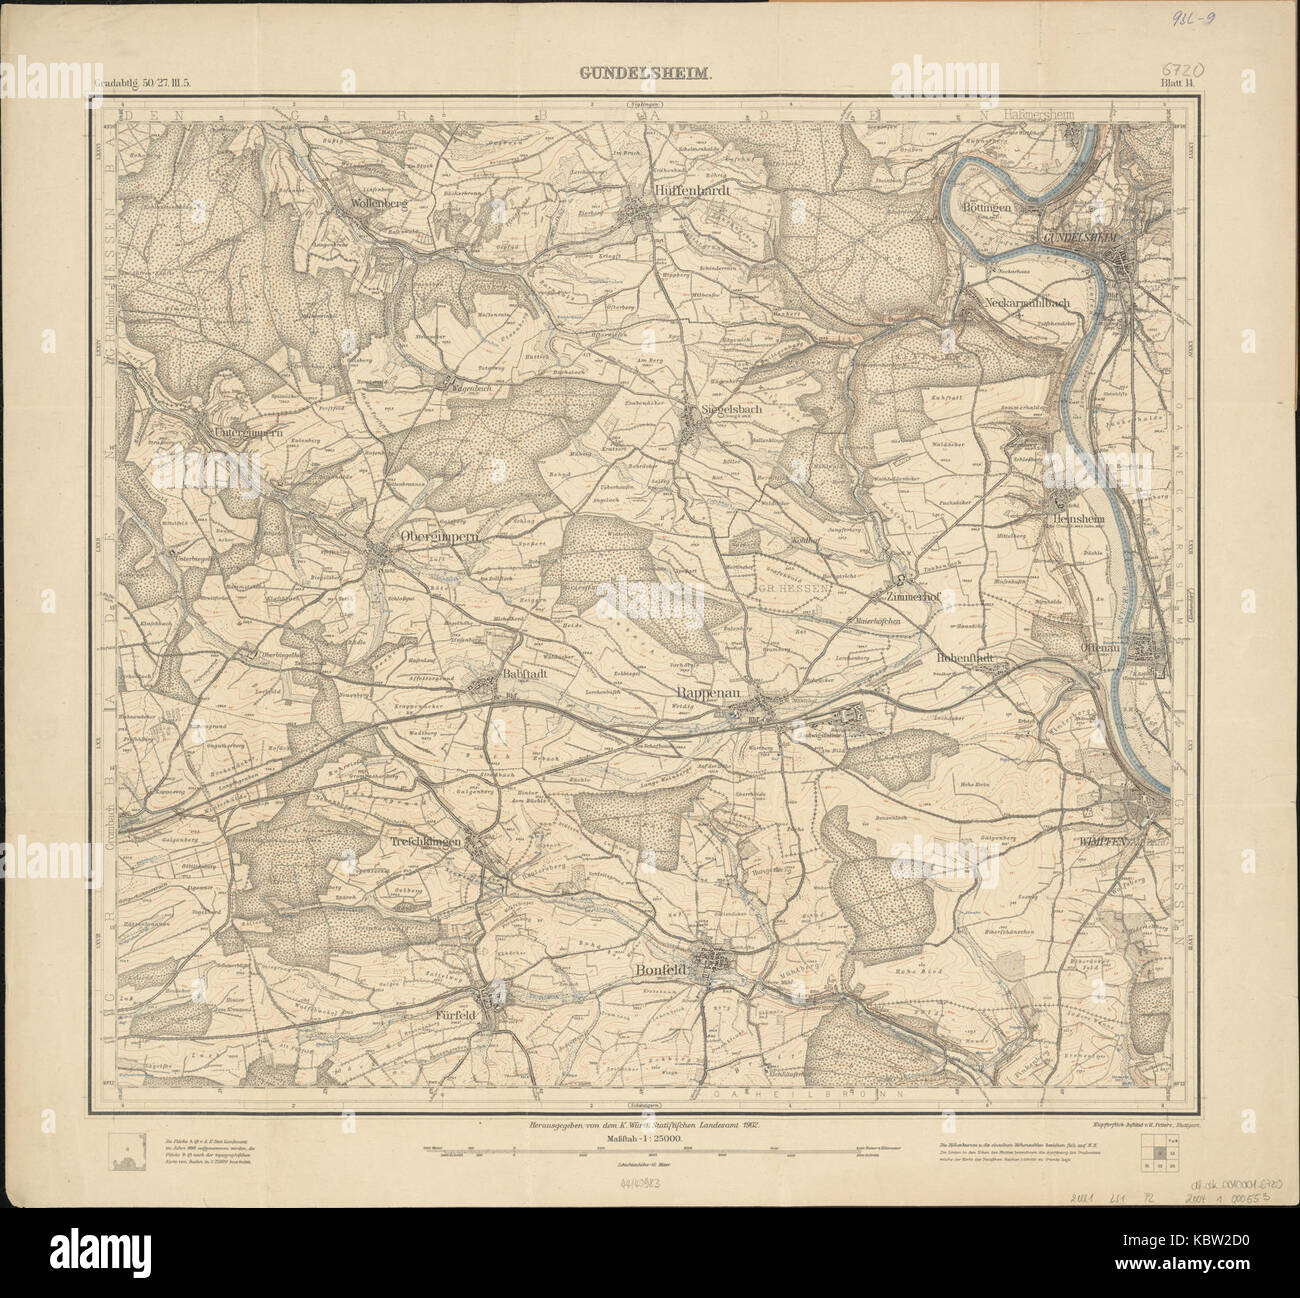 Topographische Karte 1 25000 Blatt 14 (6720) Gundelsheim 1902 Stock Photo